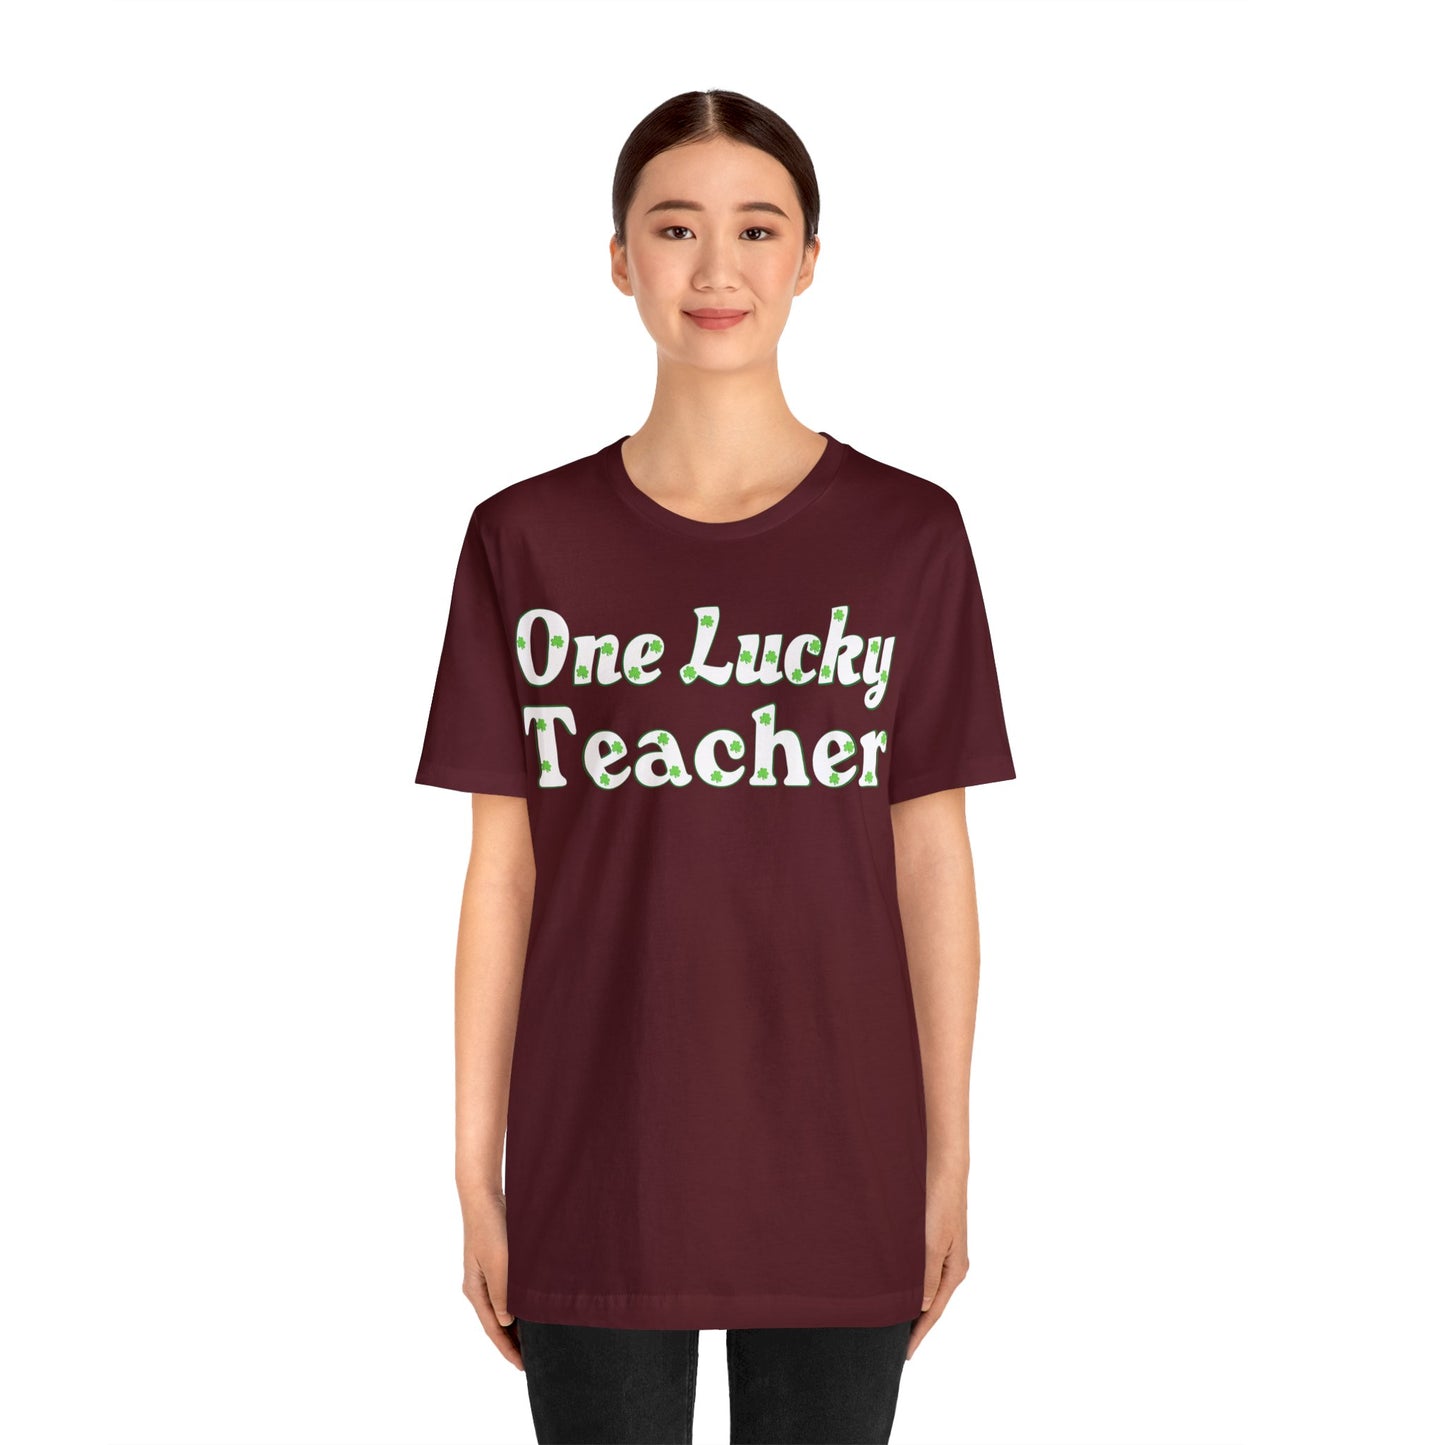 One Lucky Teacher Shirt feeling Lucky St Patrick's Day shirt